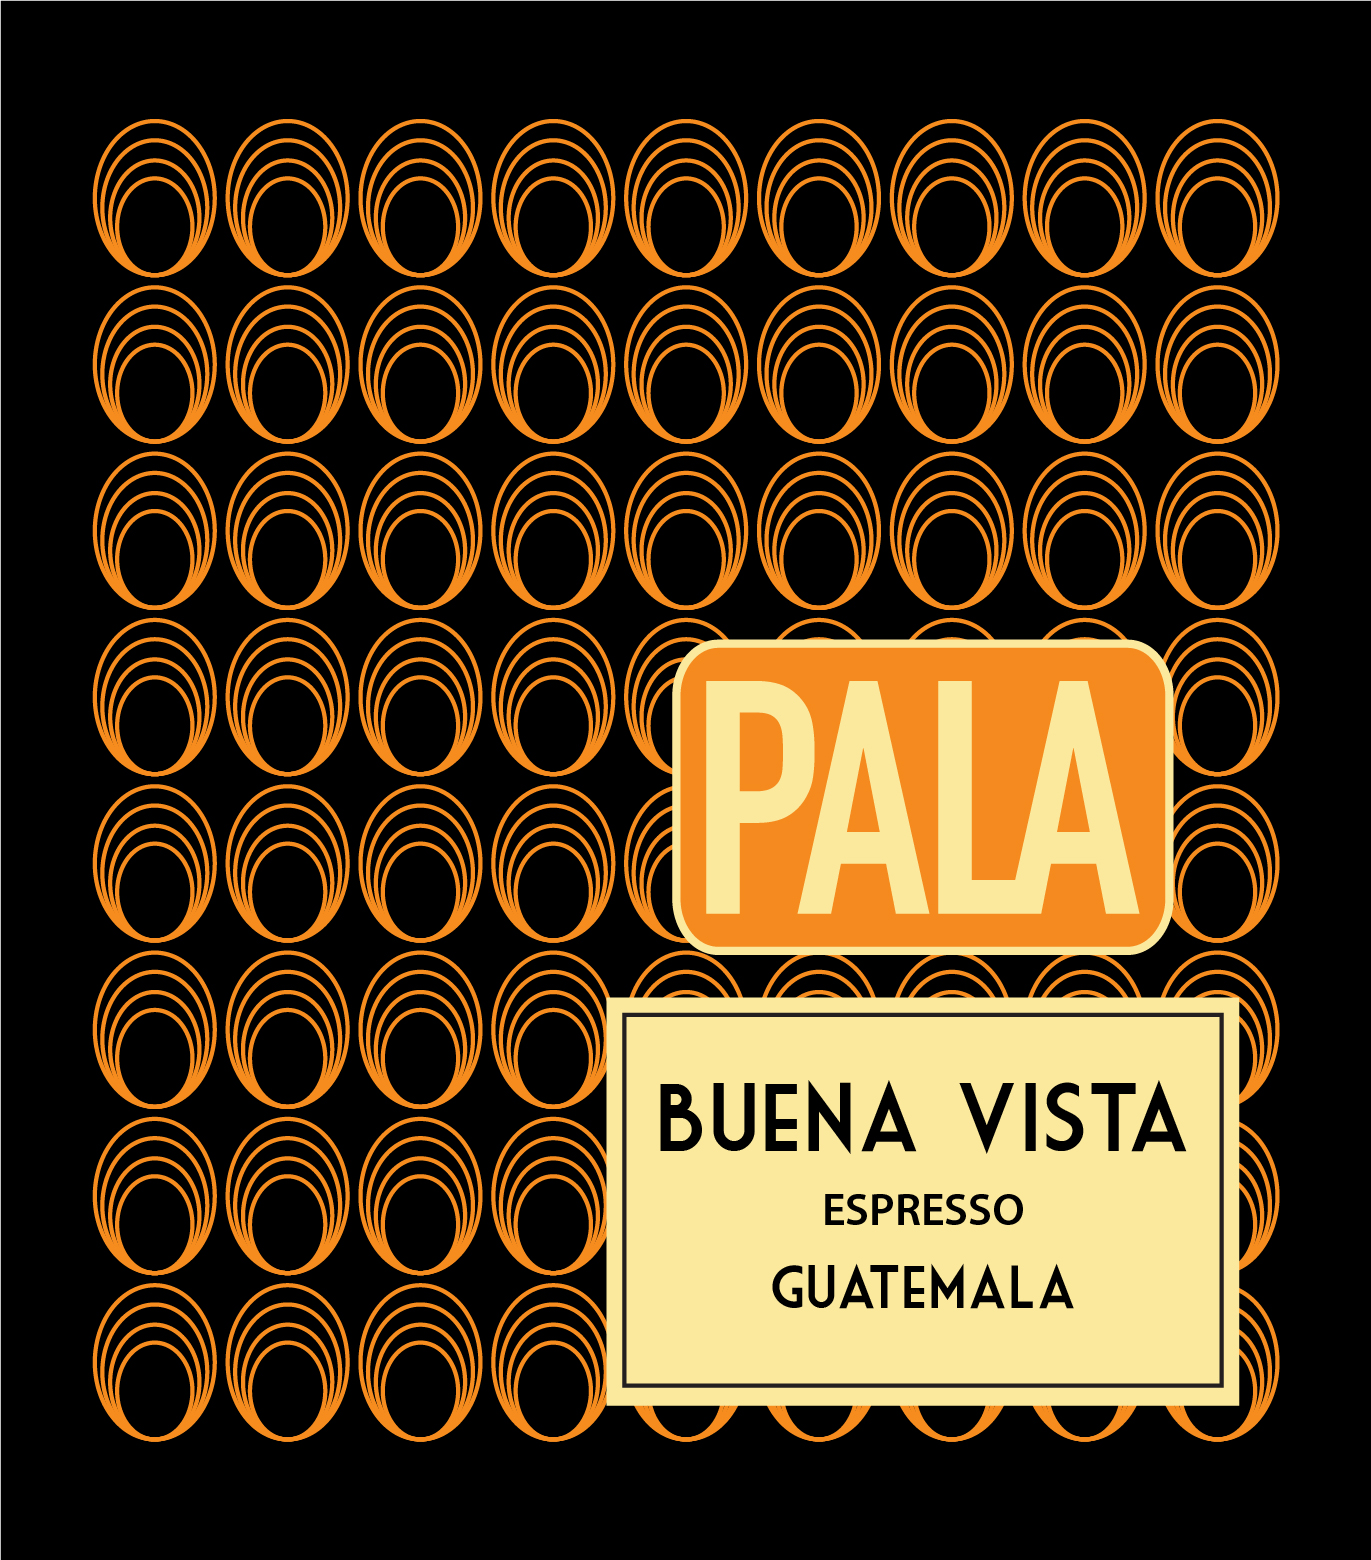 Buena Vista Espresso